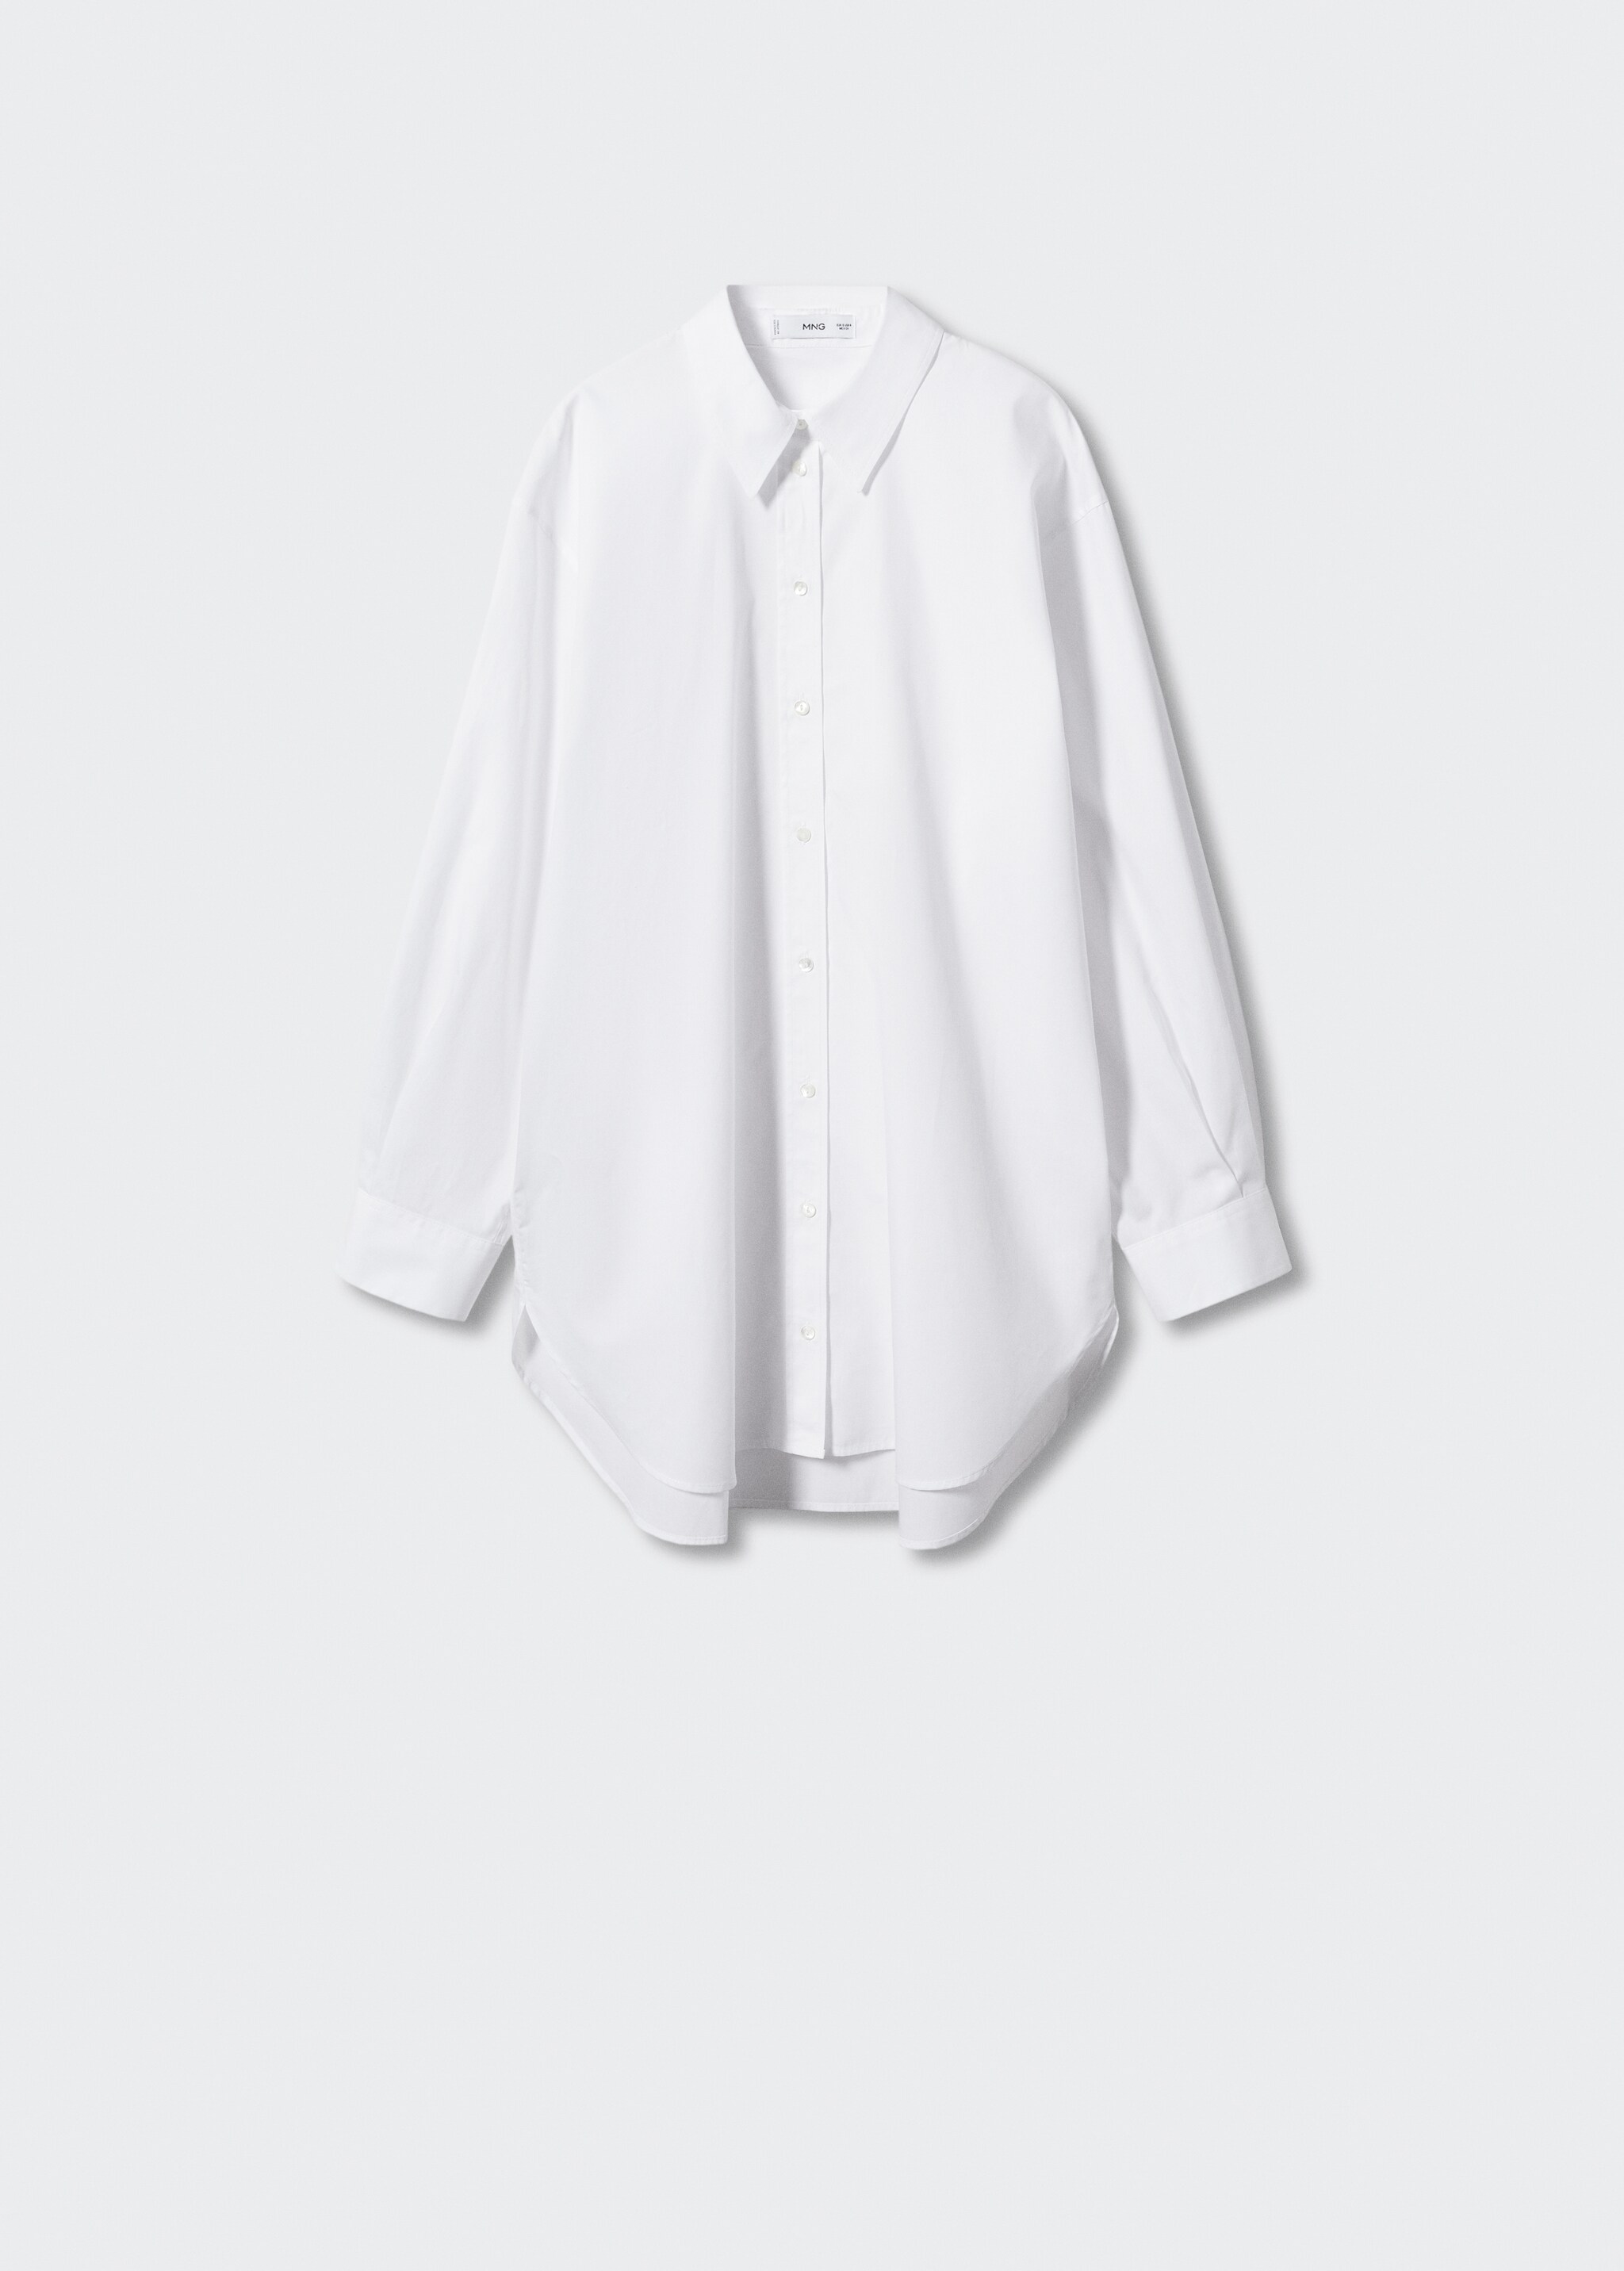 Camisa larga algodón - Artículo sin modelo